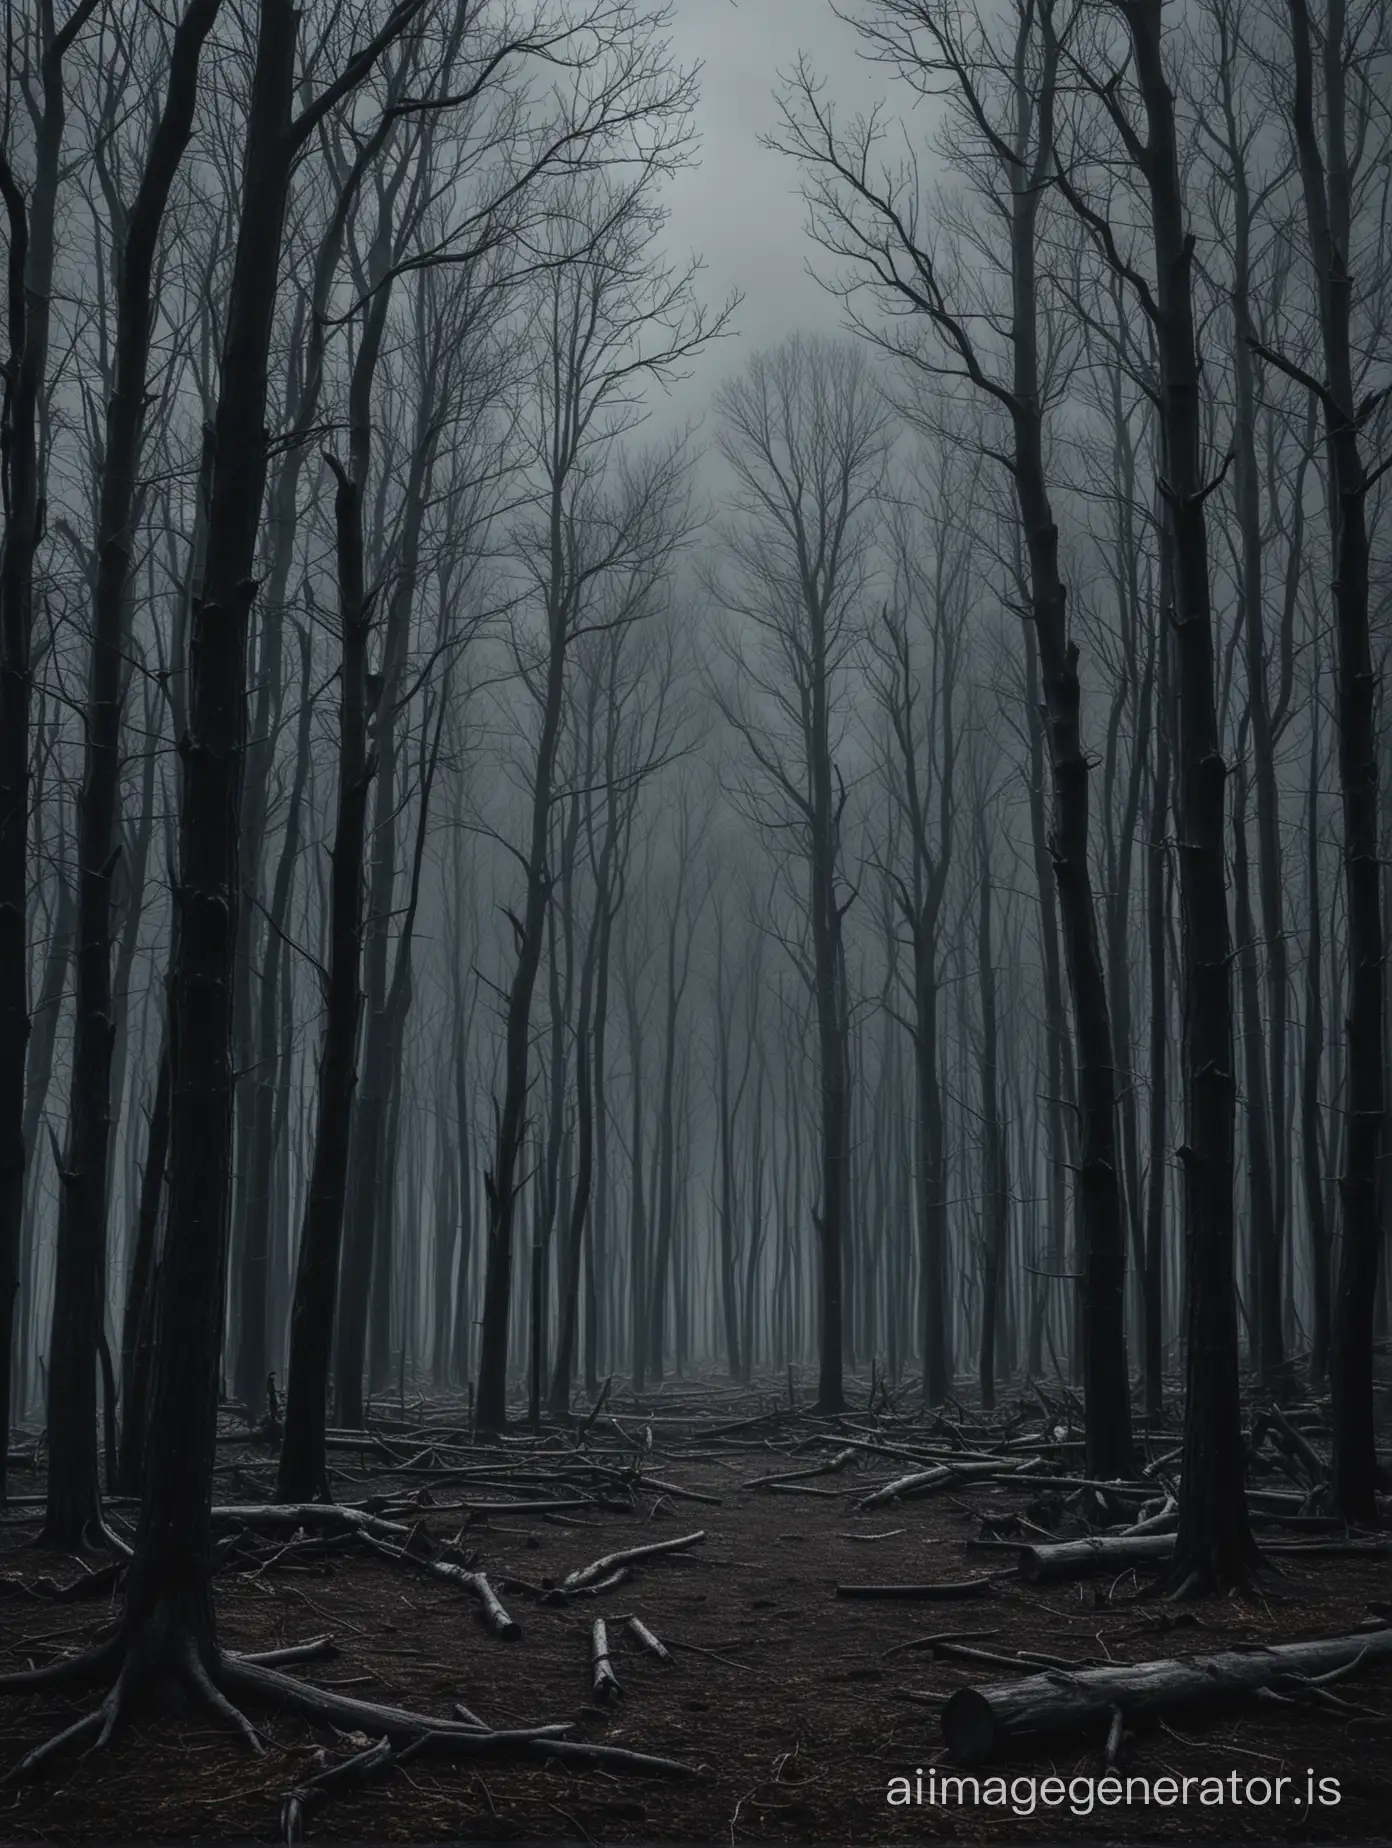 Ein dunkles Bild, mit einem dunklen Wald voll von abgestorbenen Bäumen 